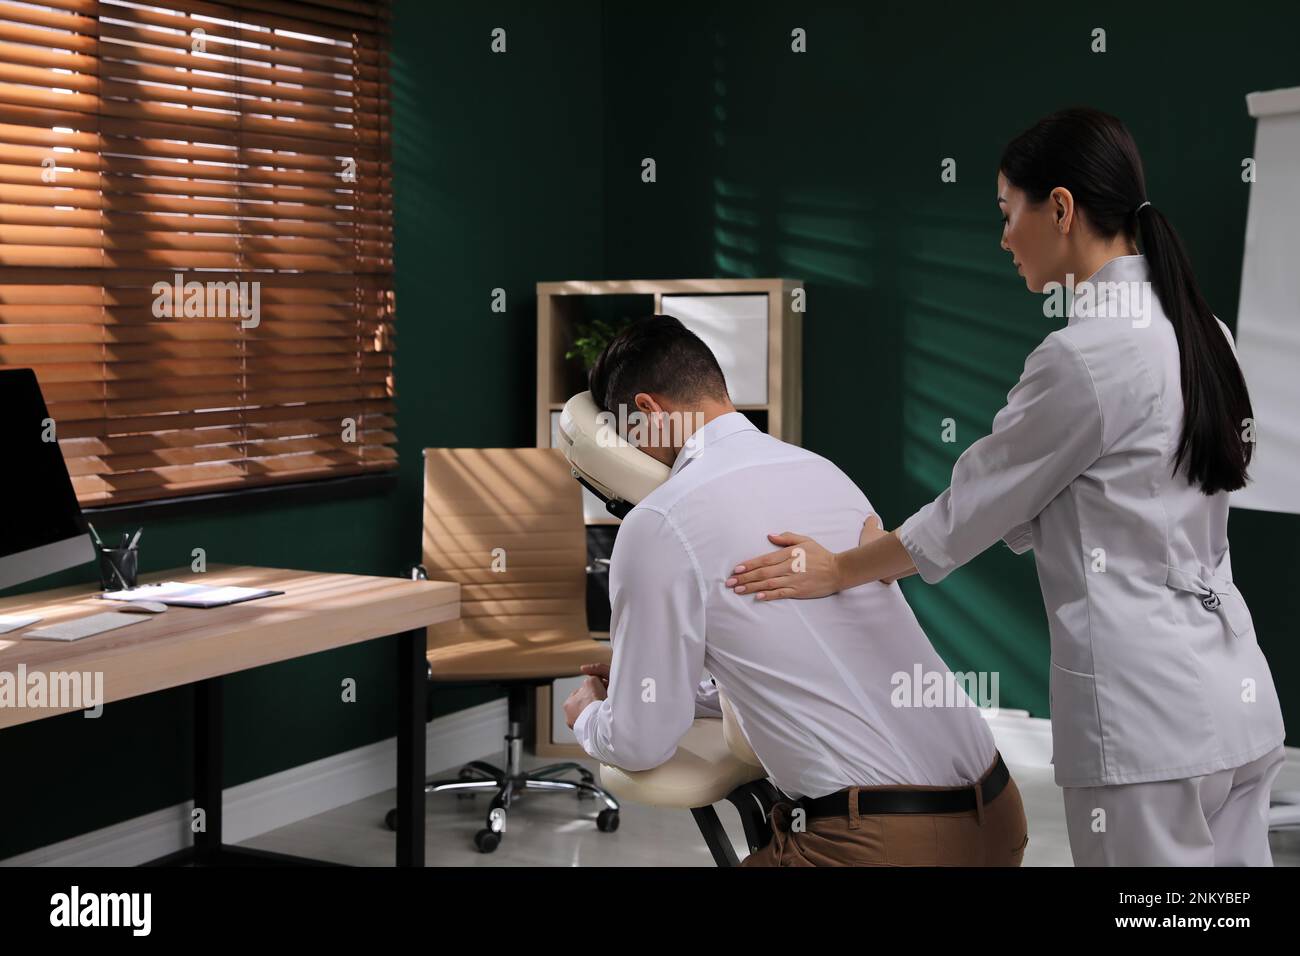 Homme recevant un massage dans une chaise moderne à l'intérieur Photo Stock  - Alamy